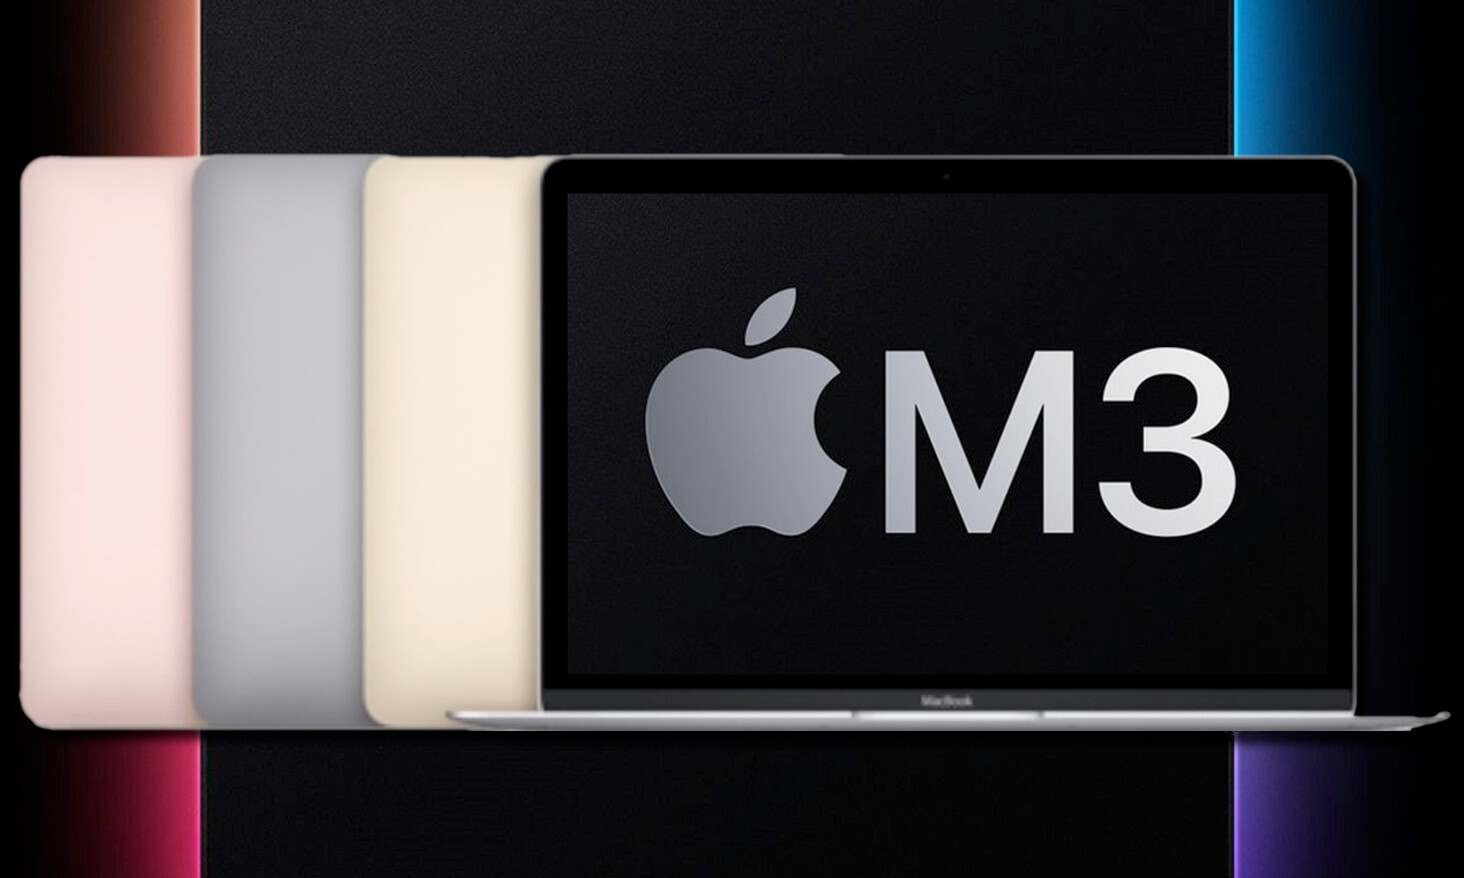 پردازنده M3 اپل چه زمانی وارد بازار می شود؟